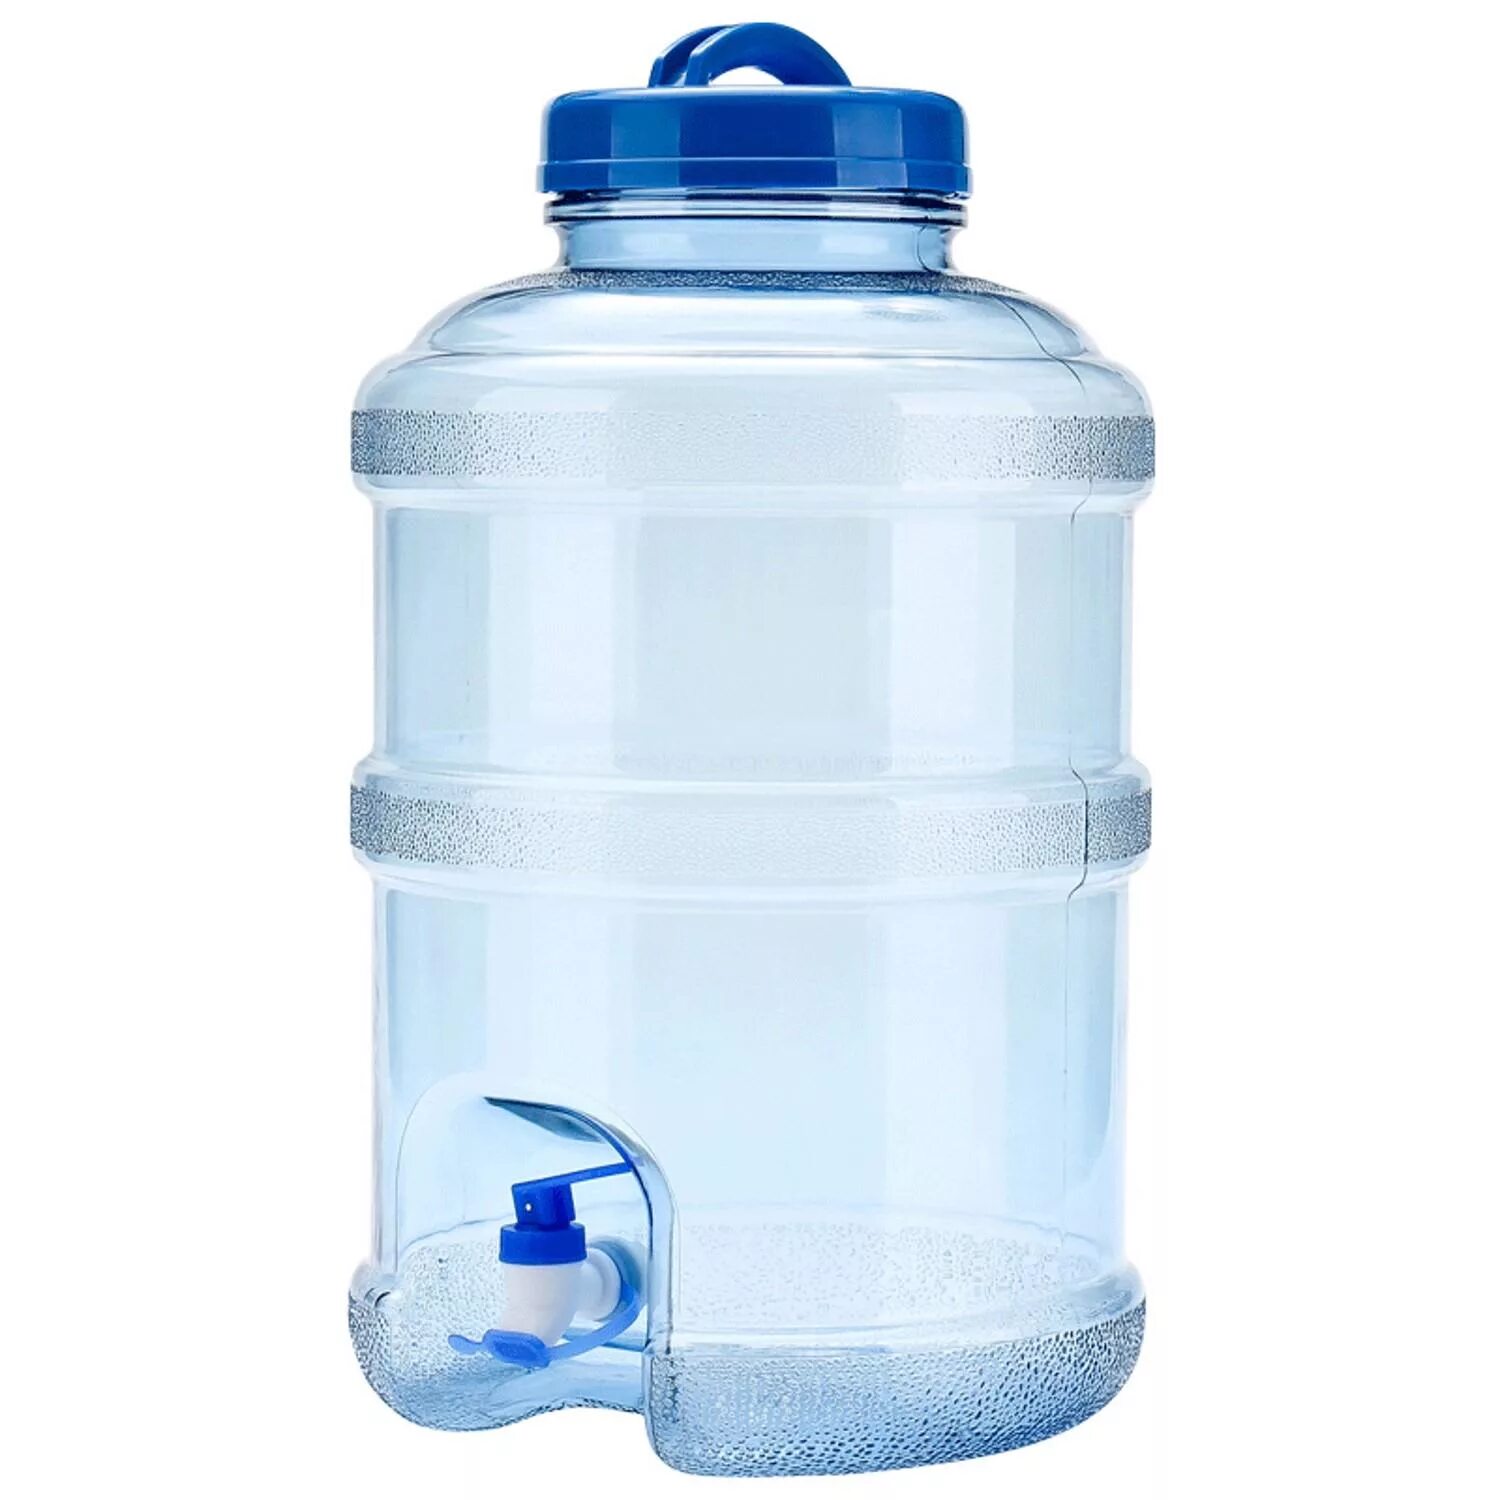 Бутылка ПЭТ 20 литров с краном. Бутылка для воды с краном. Бутылка воды 5 литров. Бутыль для воды с краником. Заказать воду 20 литров